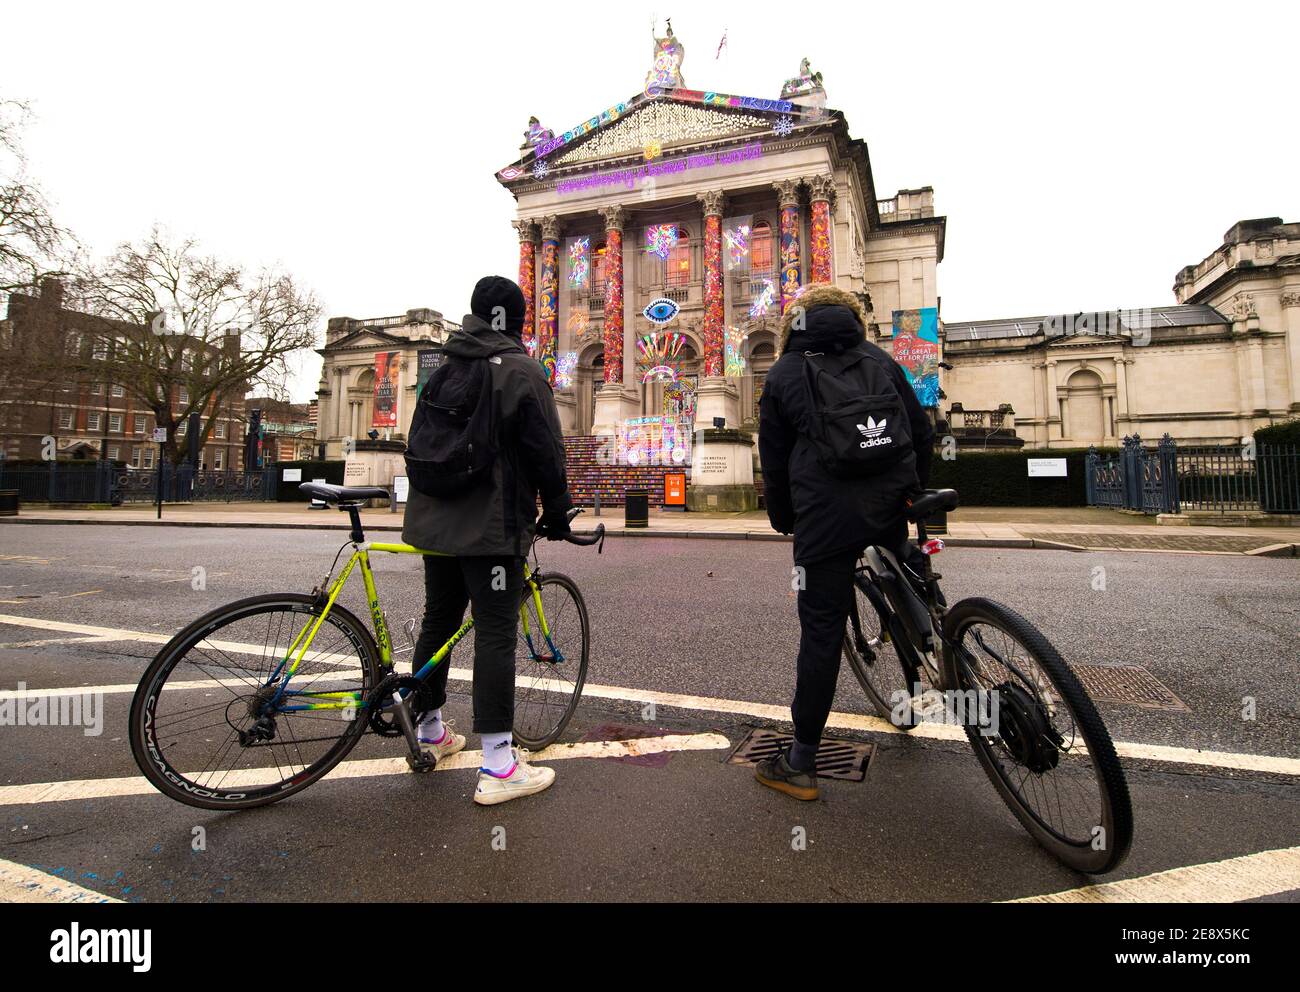 Zwei Menschen betrachten "Remembering a Brave New World" von Chila Kumari Singh Burman, außerhalb der Tate Britain in London während Englands dritter nationaler Sperre, um die Ausbreitung des Coronavirus einzudämmen. Bilddatum: Montag, 1. Februar 2021. Stockfoto